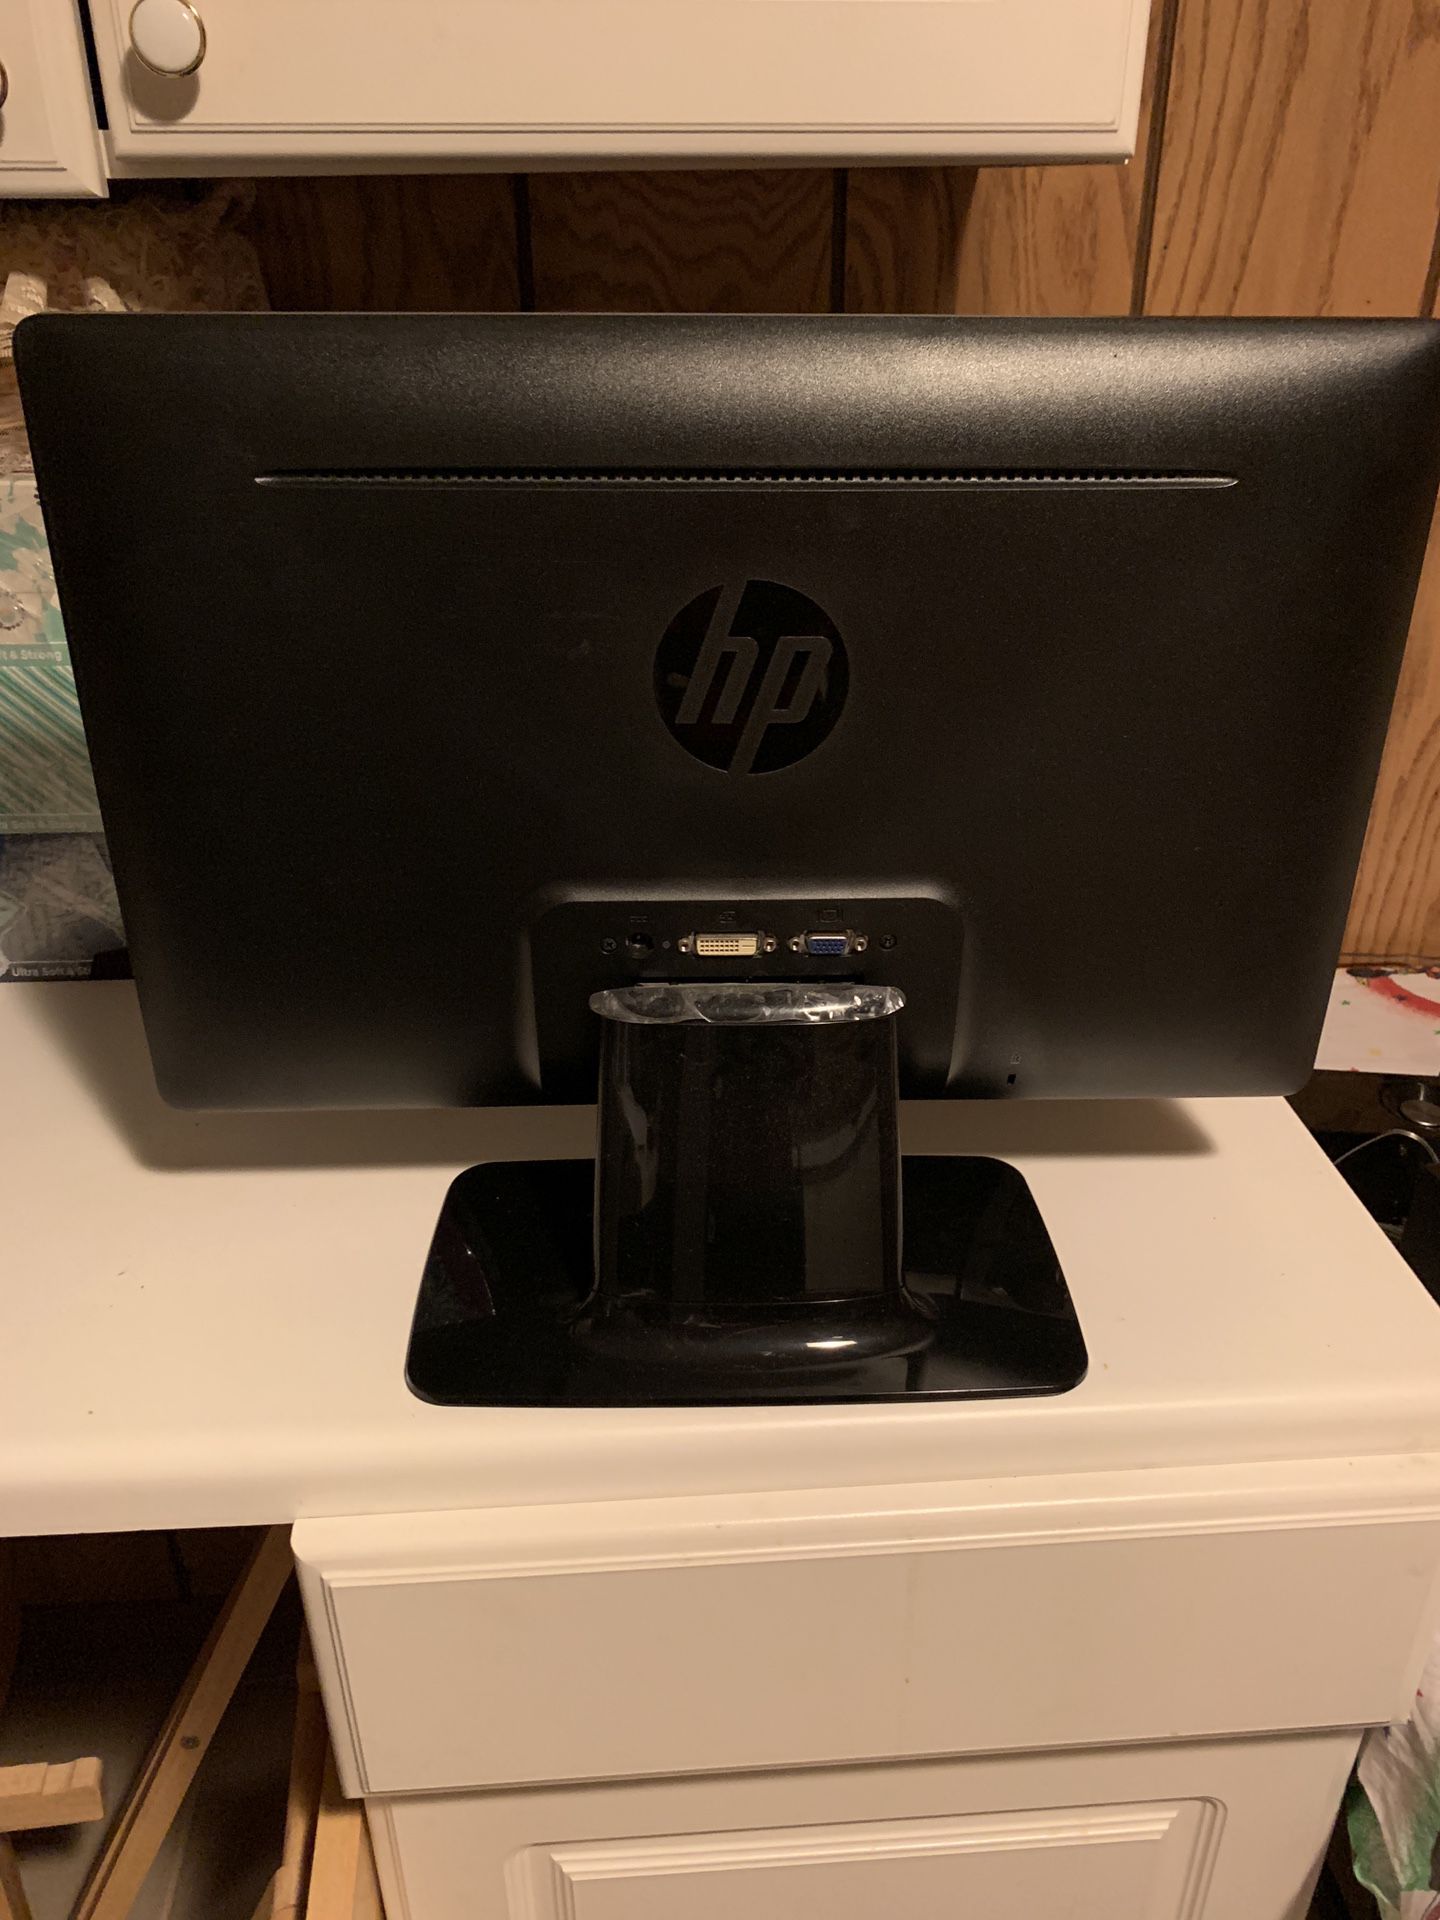 HP Monitors